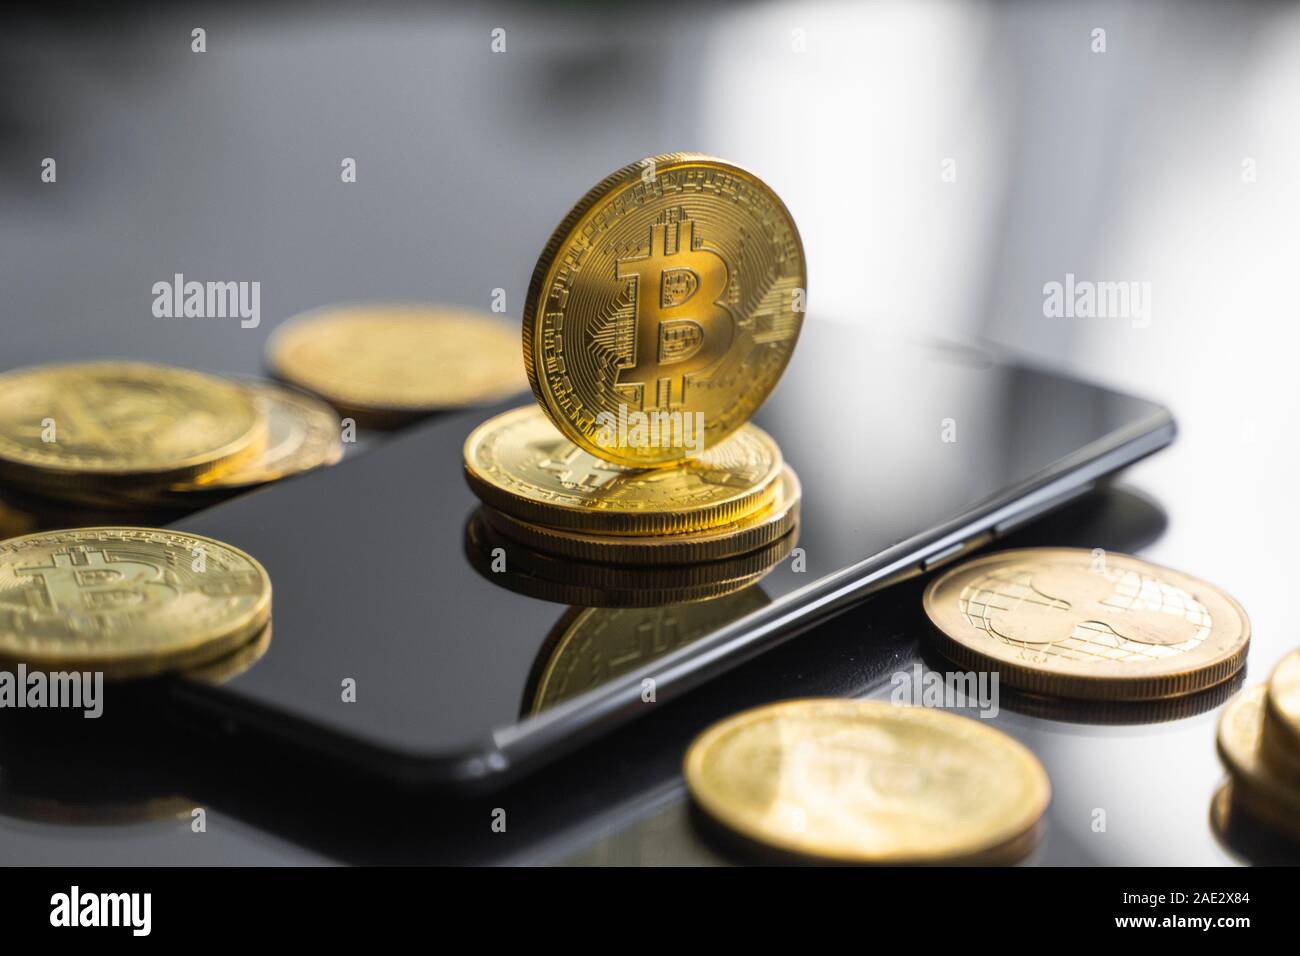 Bitcoin or coin sur un smartphone avec un grand nombre de pièces de bitcoins sur une table. Concept cryptocurrency virtuel. L'exploitation minière de bitcoins bussiness en ligne Banque D'Images